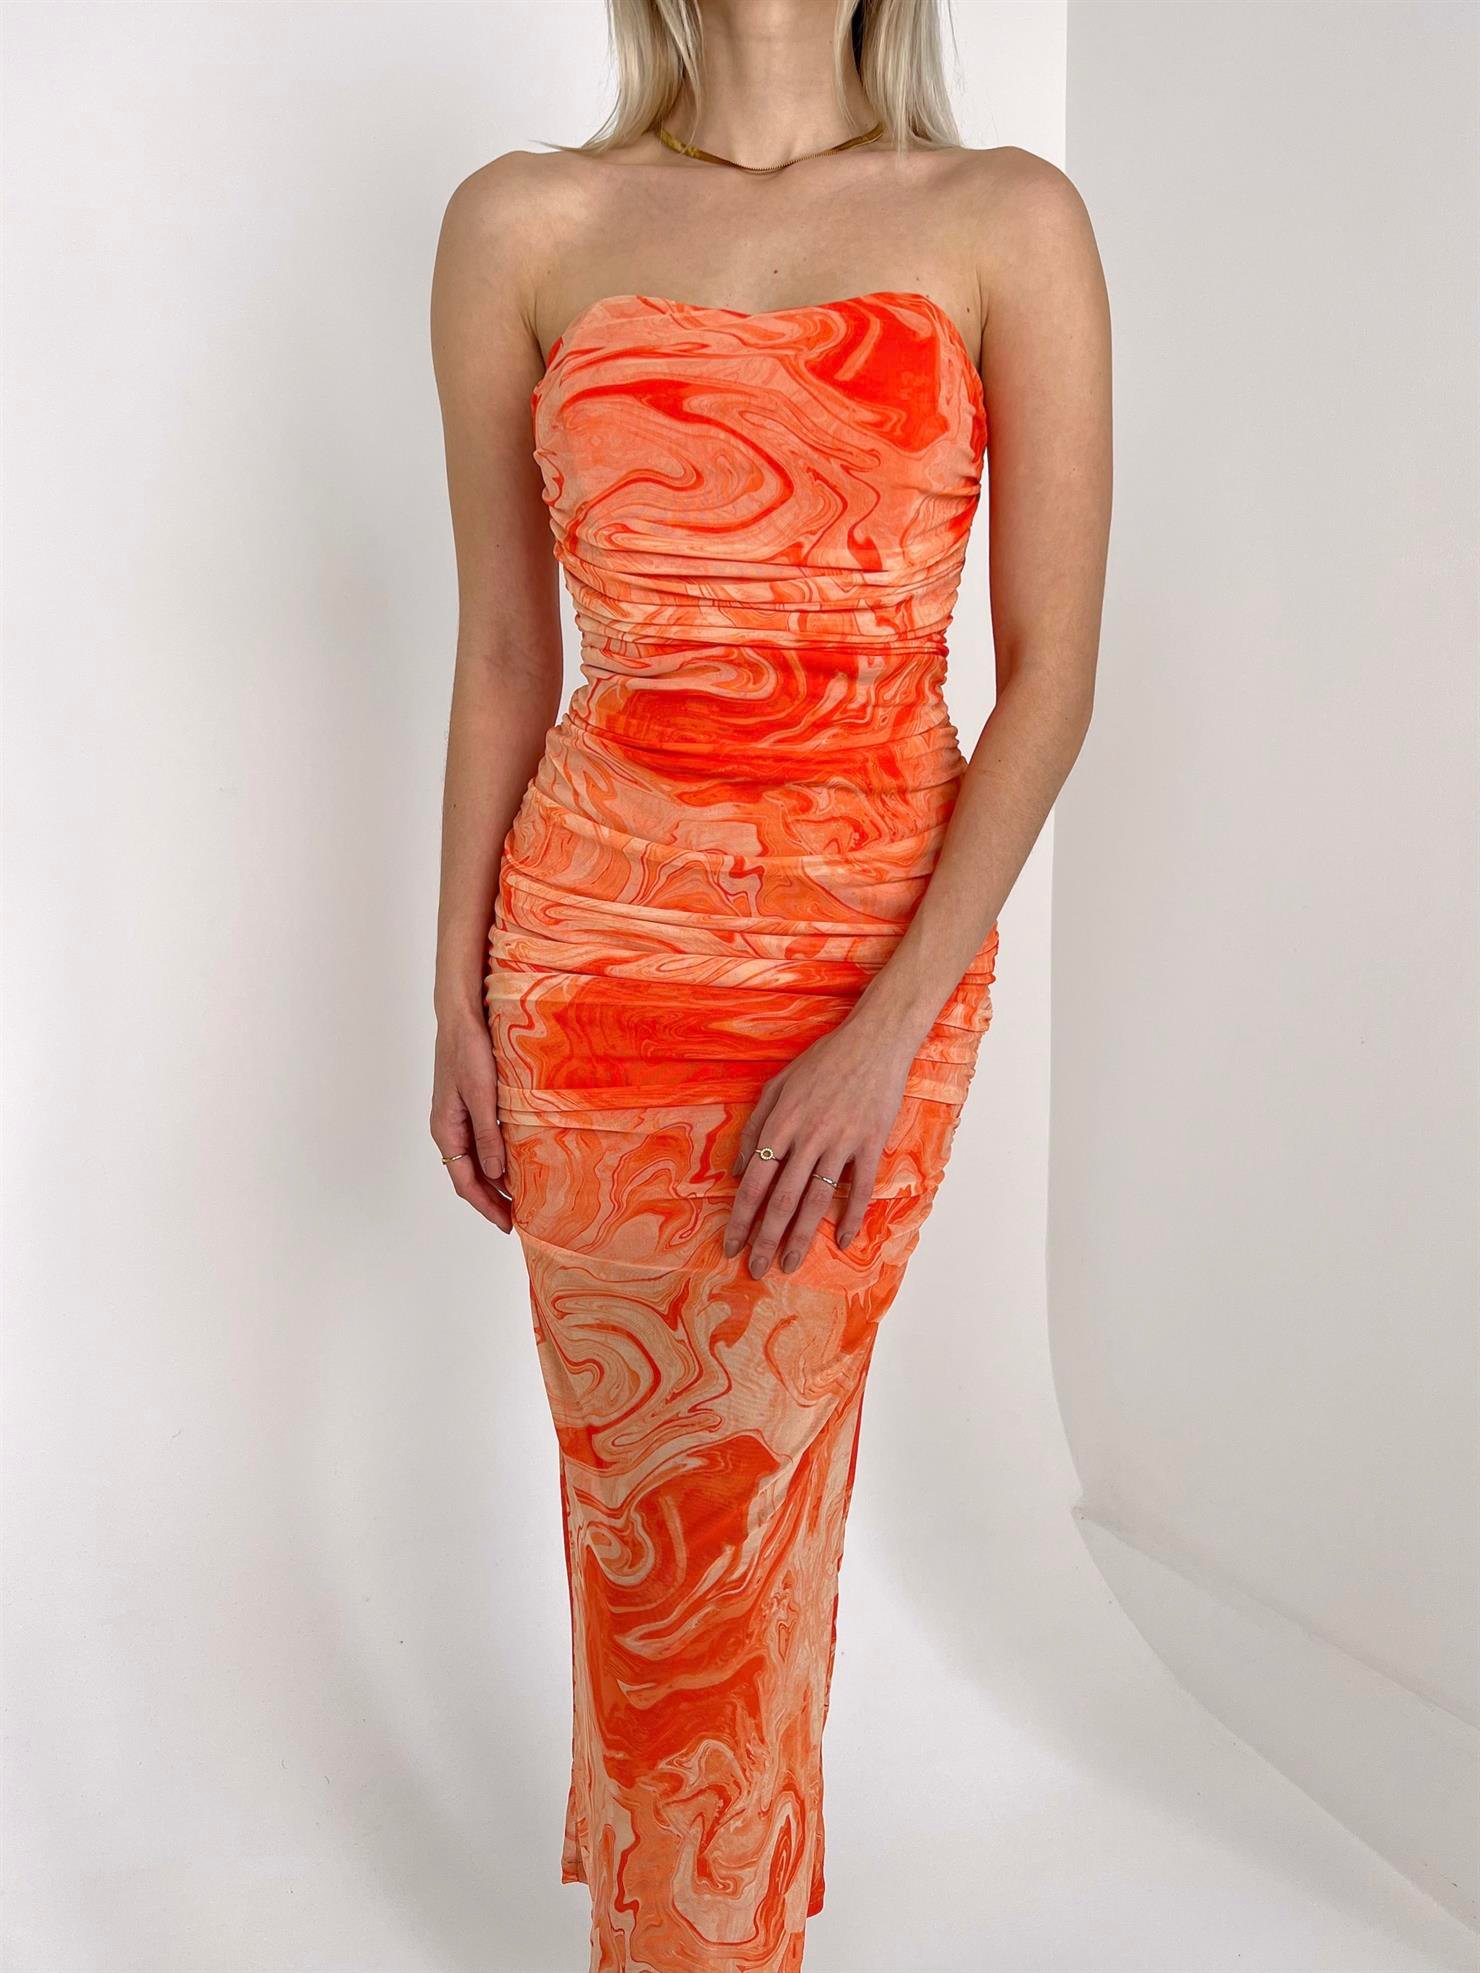 Straplez Drape Detaylı Pacers Kadın Somon Desenli Tül Elbise 23Y000122